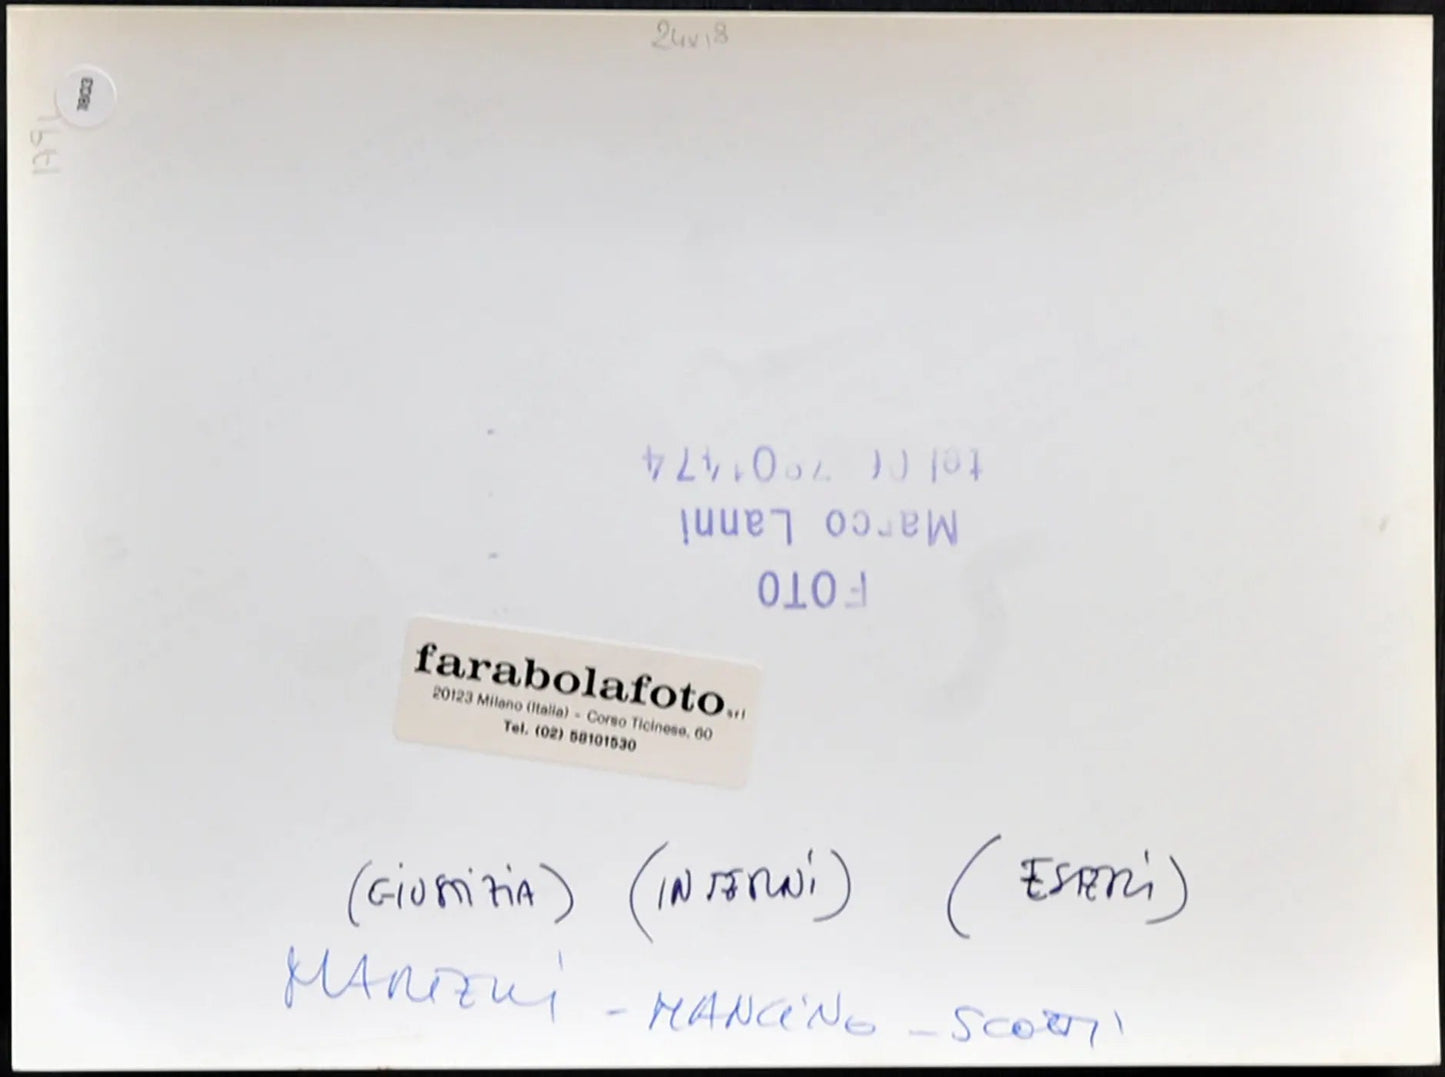 Martelli, Mancino e Scotti 1992 Ft 1803 - Stampa 24x18 cm - Farabola Stampa ai sali d'argento